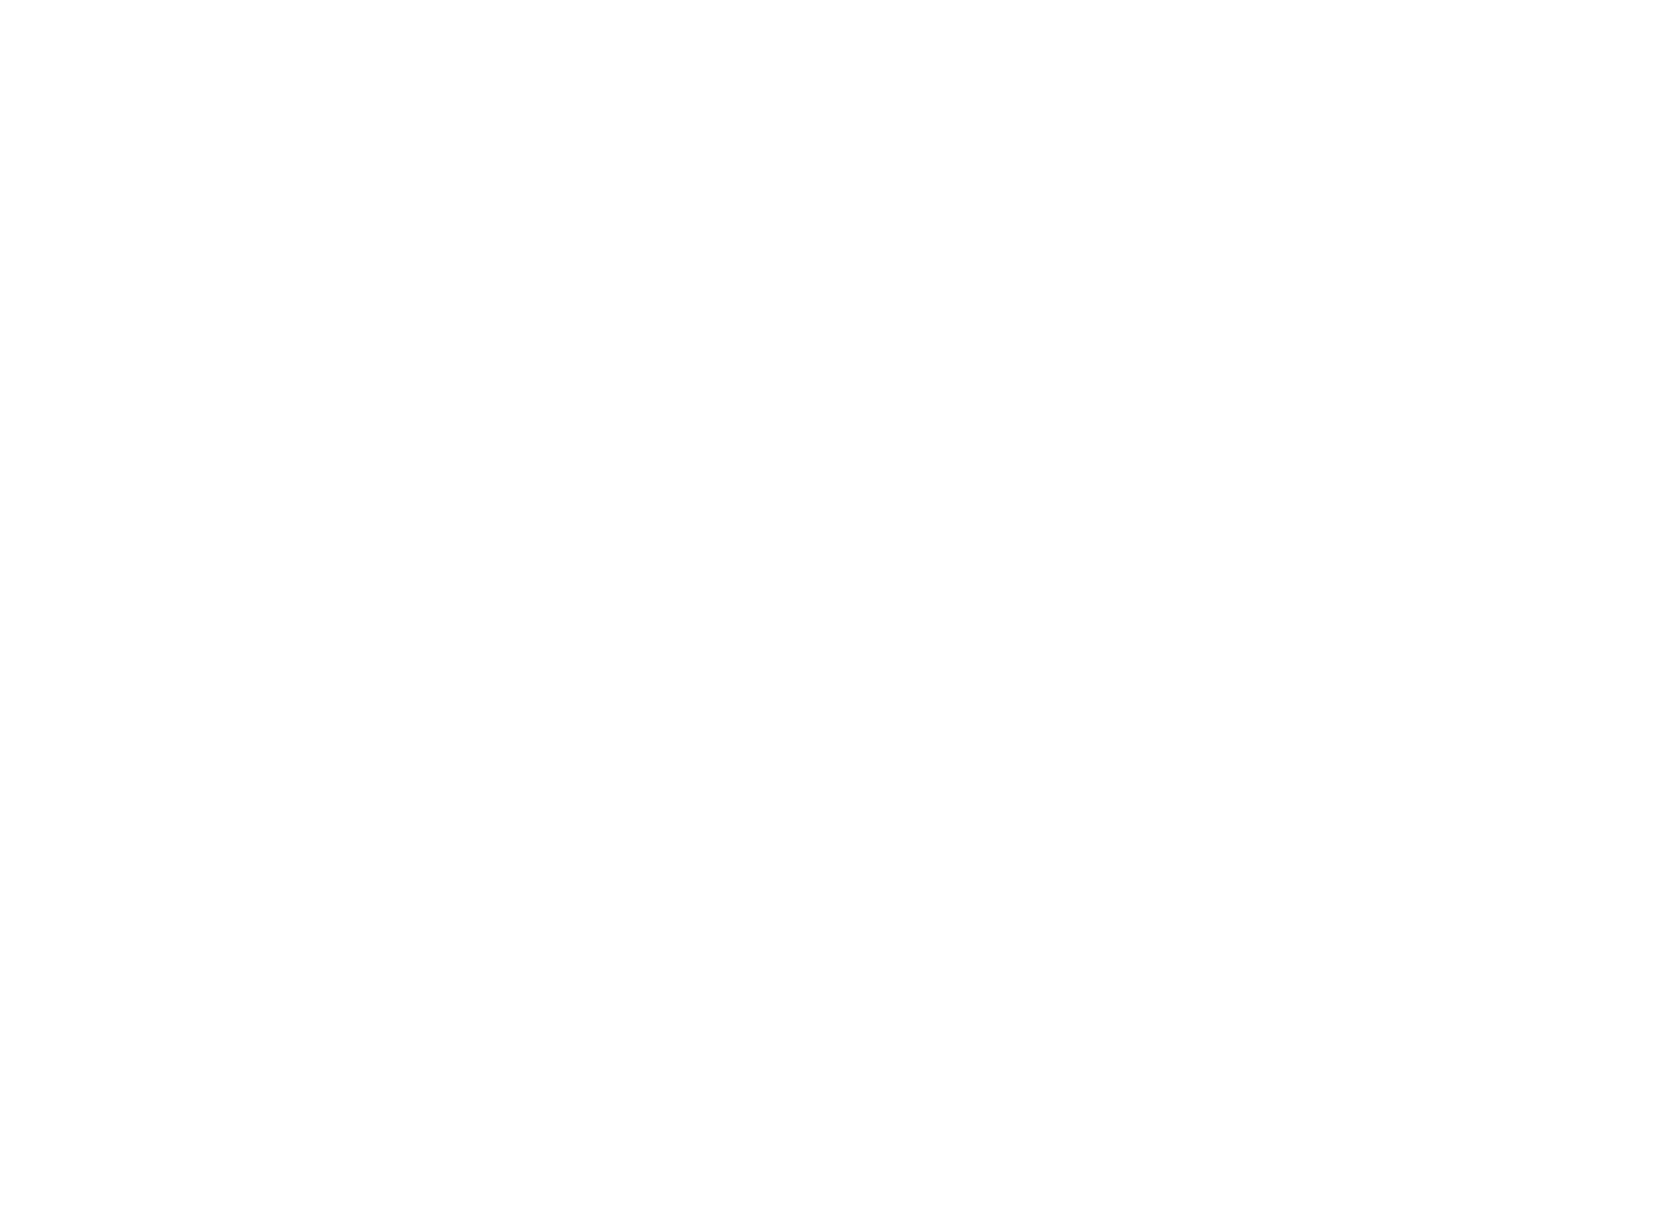 Лот №17: Картина с автографом Дмитрия Хрусталева. Холст хлопок, акриловые краски, размер 100х70 см, 2019 г. (авторы: Дмитрий Хрусталев, Сережа Лукачев). Начальная цена: 25 000 руб.